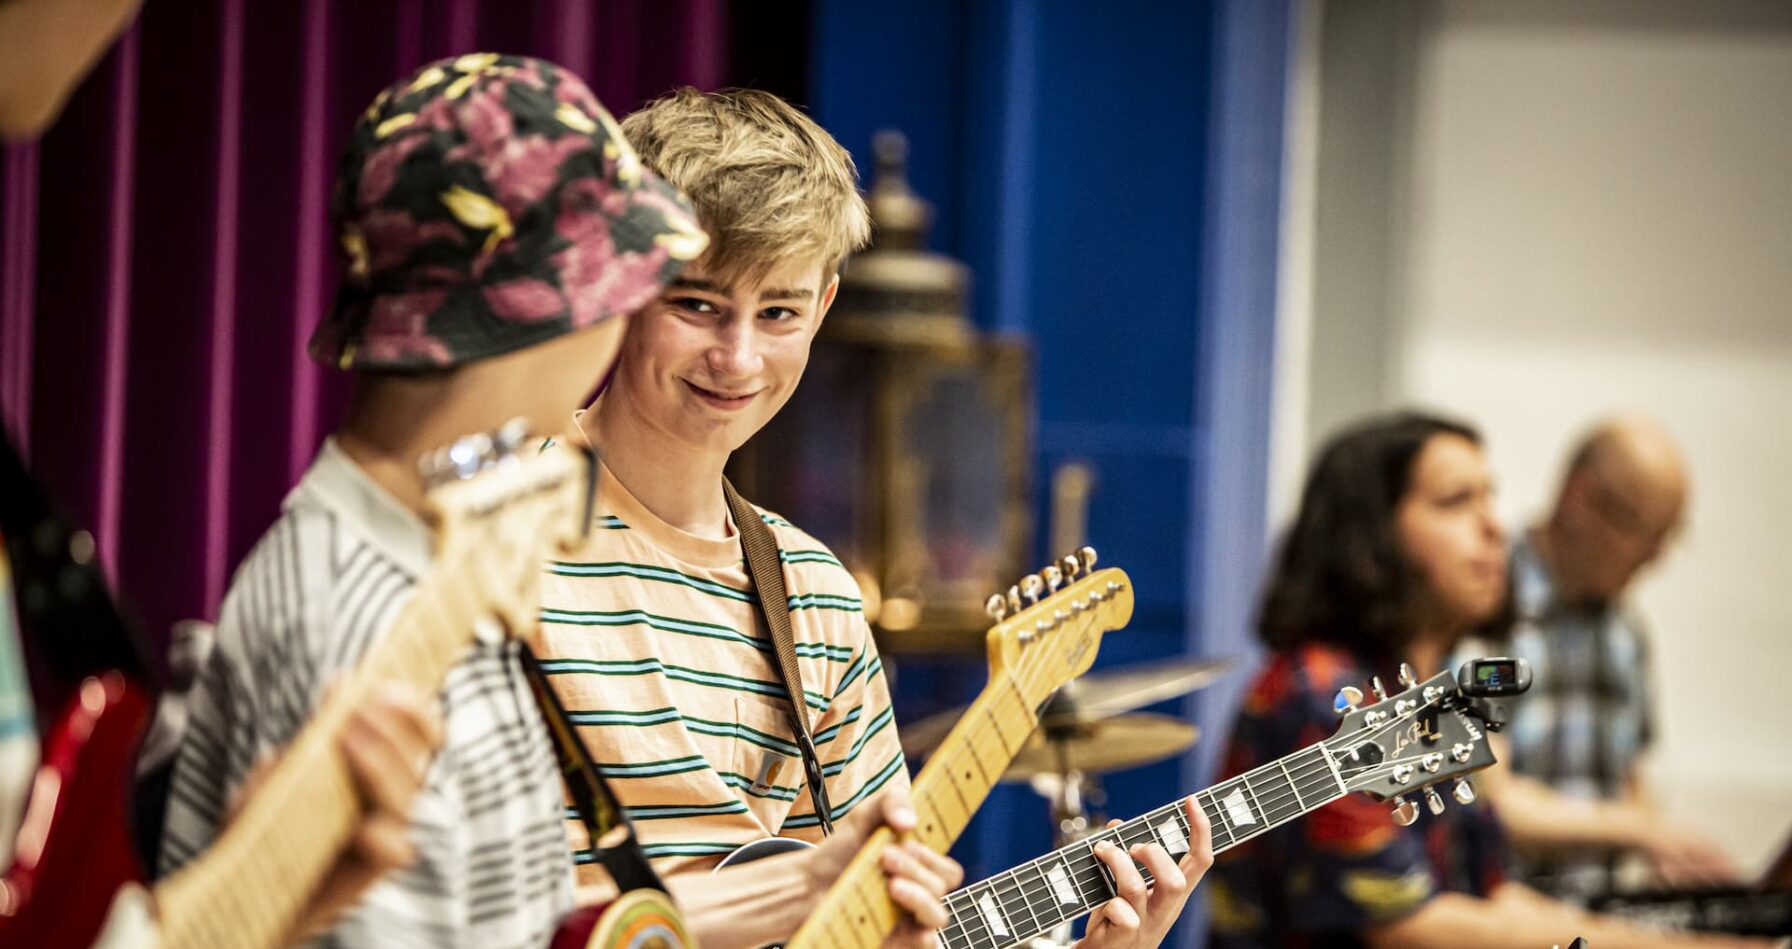 To drenge spiller elguitar og smiler til hinanden